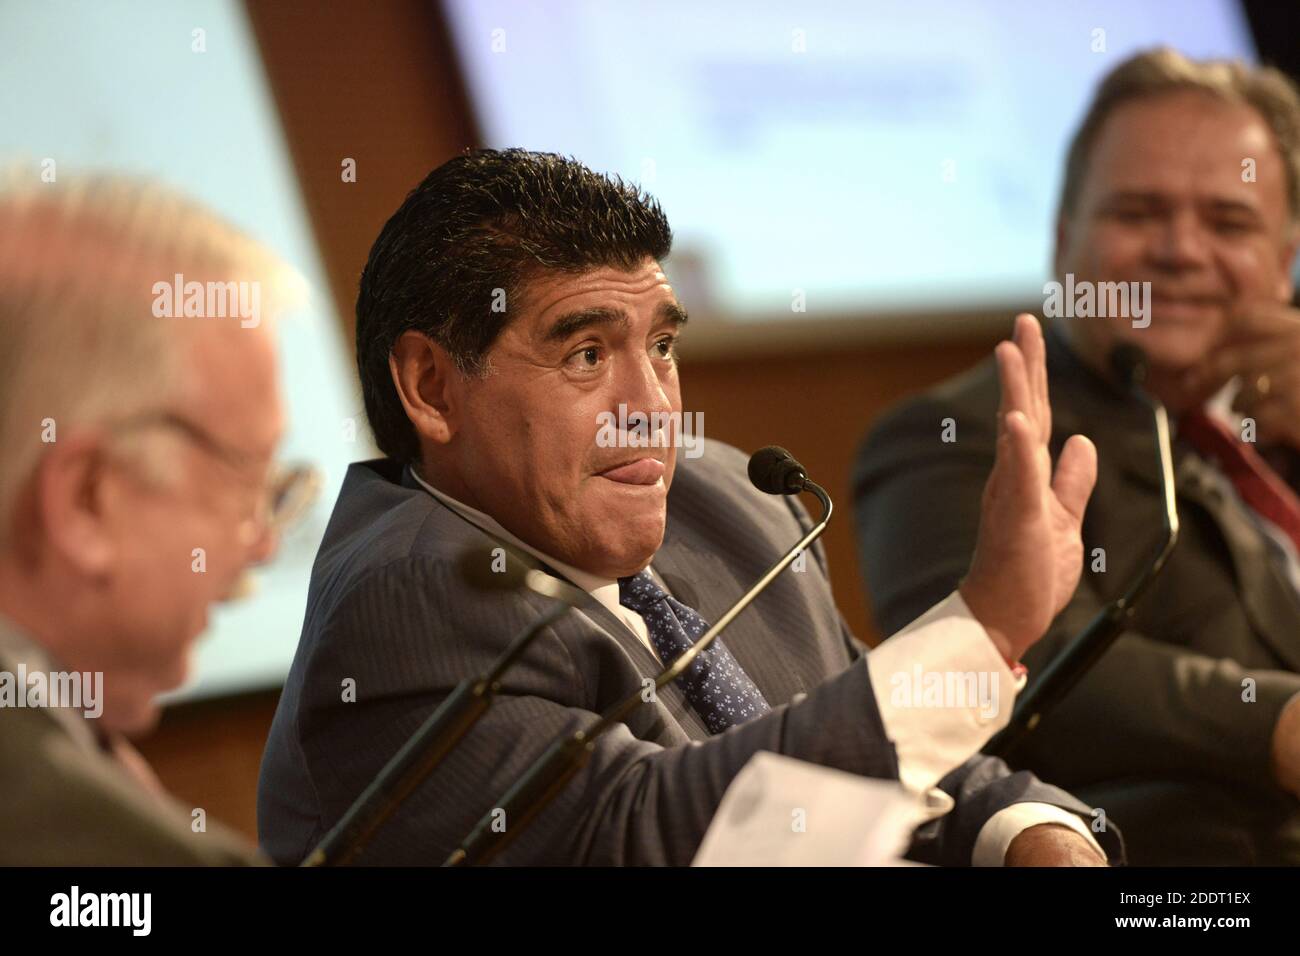 Der legendäre argentinische Fußballspieler Diego Armando Maradona, einer der größten Fußballspieler aller Zeiten, während einer Pressekonferenz in Mailand. Stockfoto